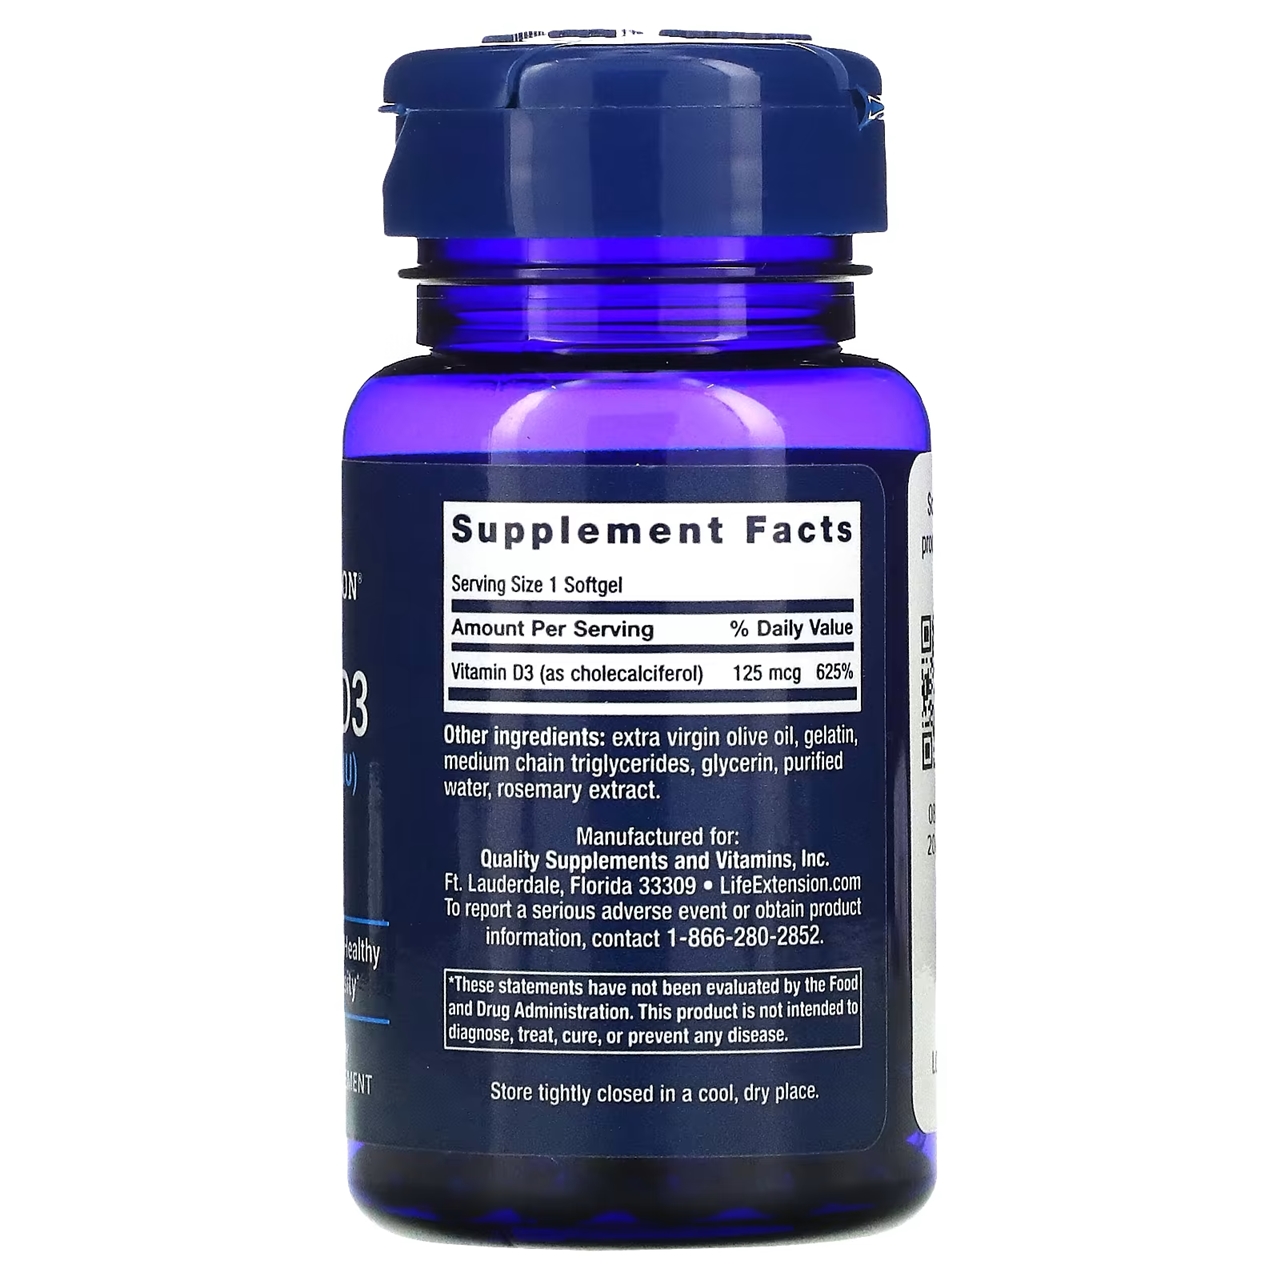 Life Extension  Vitamin D3 - 125 mcg (5000 IU) / 60 Softgels